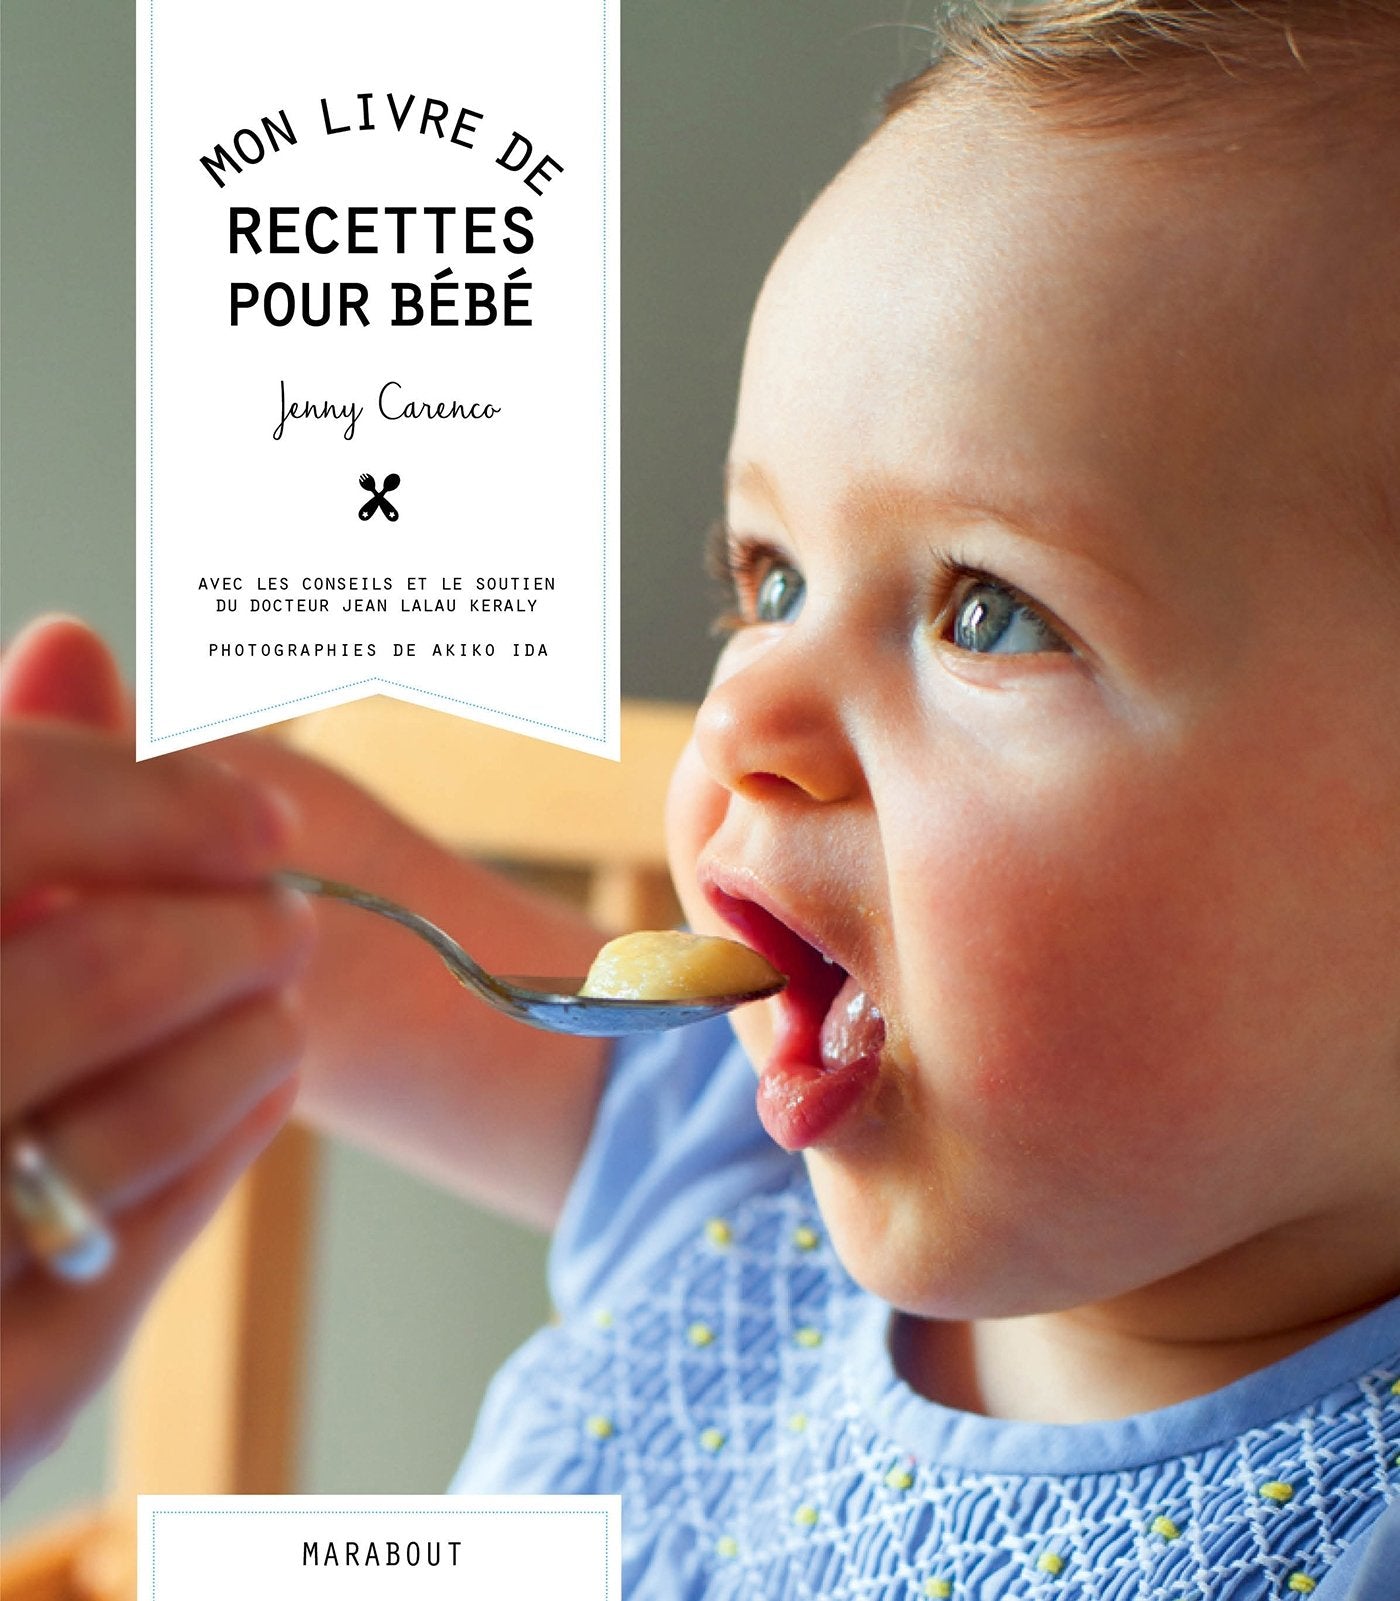 Livre ISBN 2501097432 Mon livre de recettes pour bébé (Jenny Carenco)